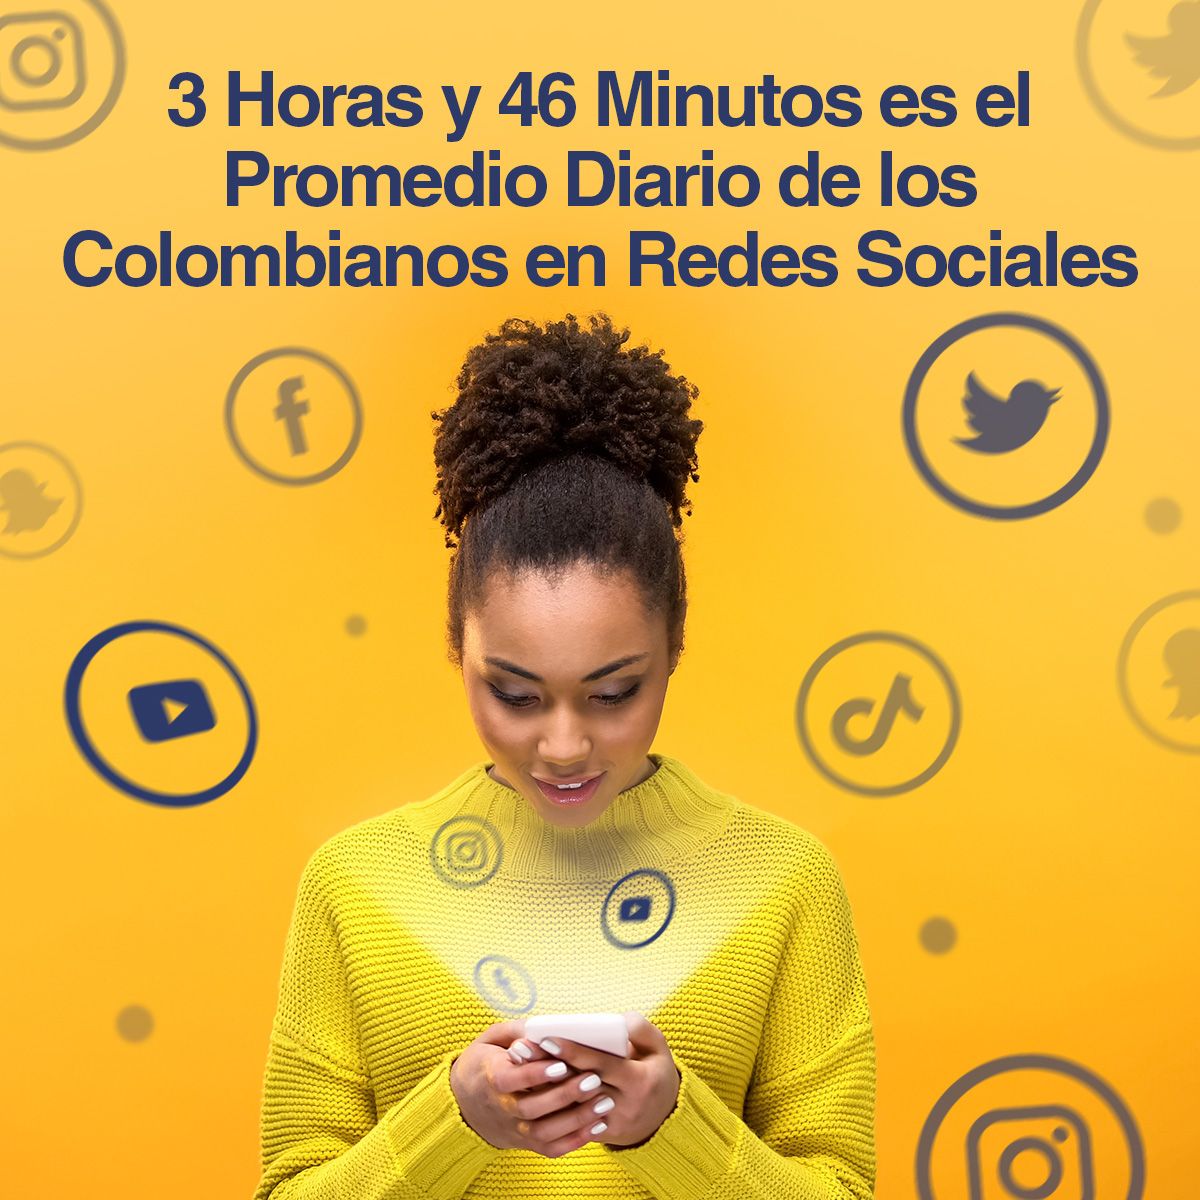 3 Horas y 46 Minutos es el Promedio Diario de los Colombianos en Redes Sociales